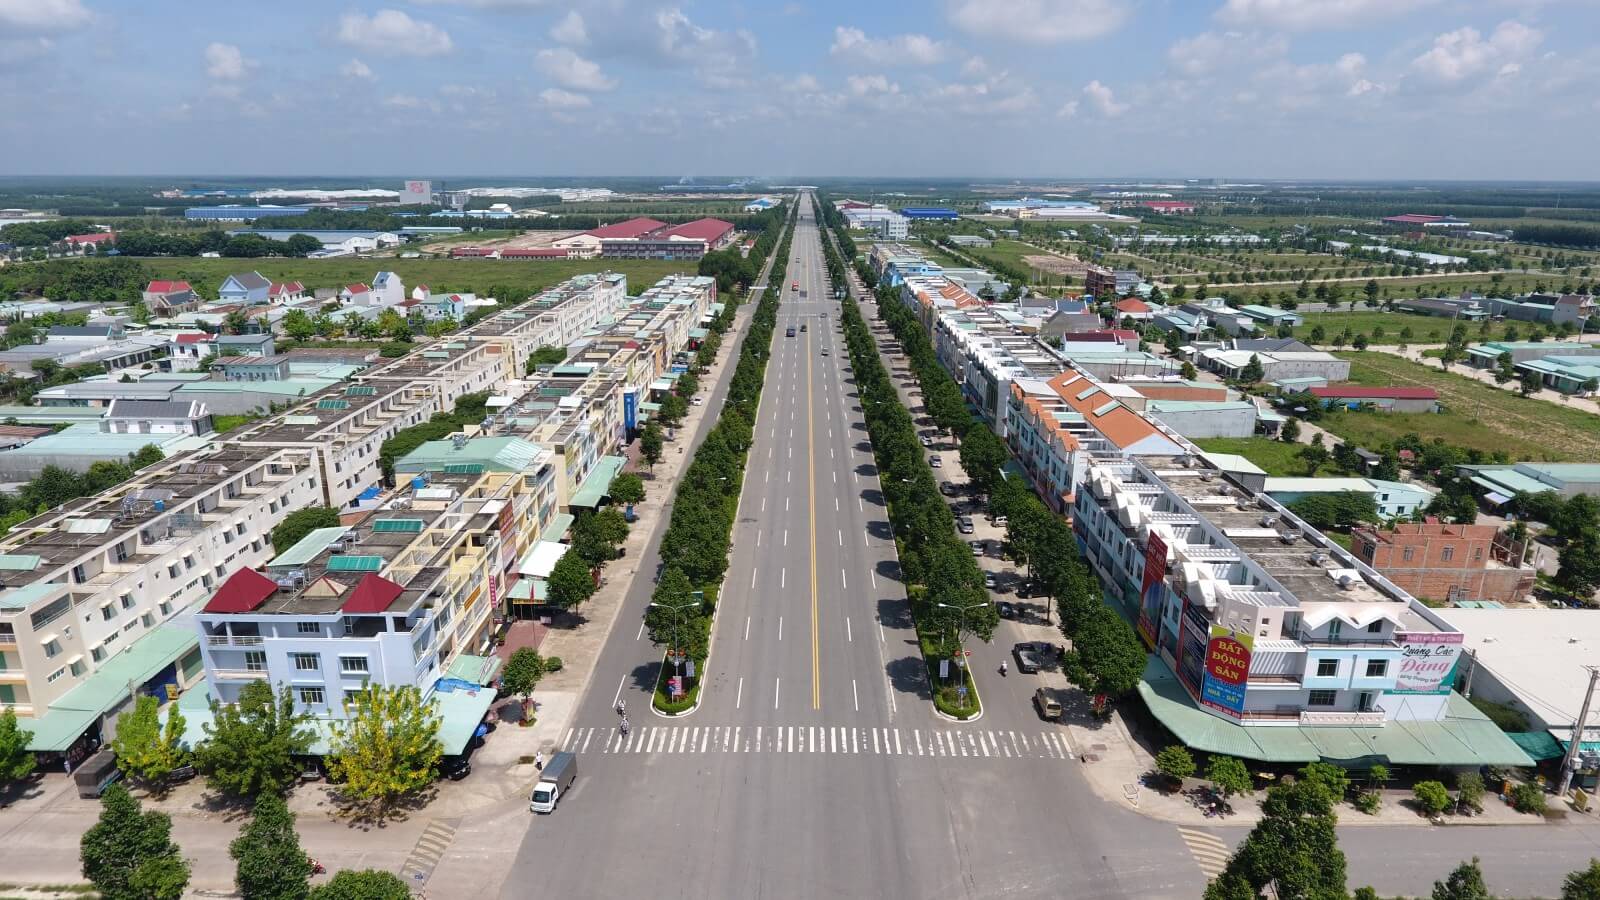 Trung tâm hành chính Huyện Bàu Bàng [Update tháng 12/2023]